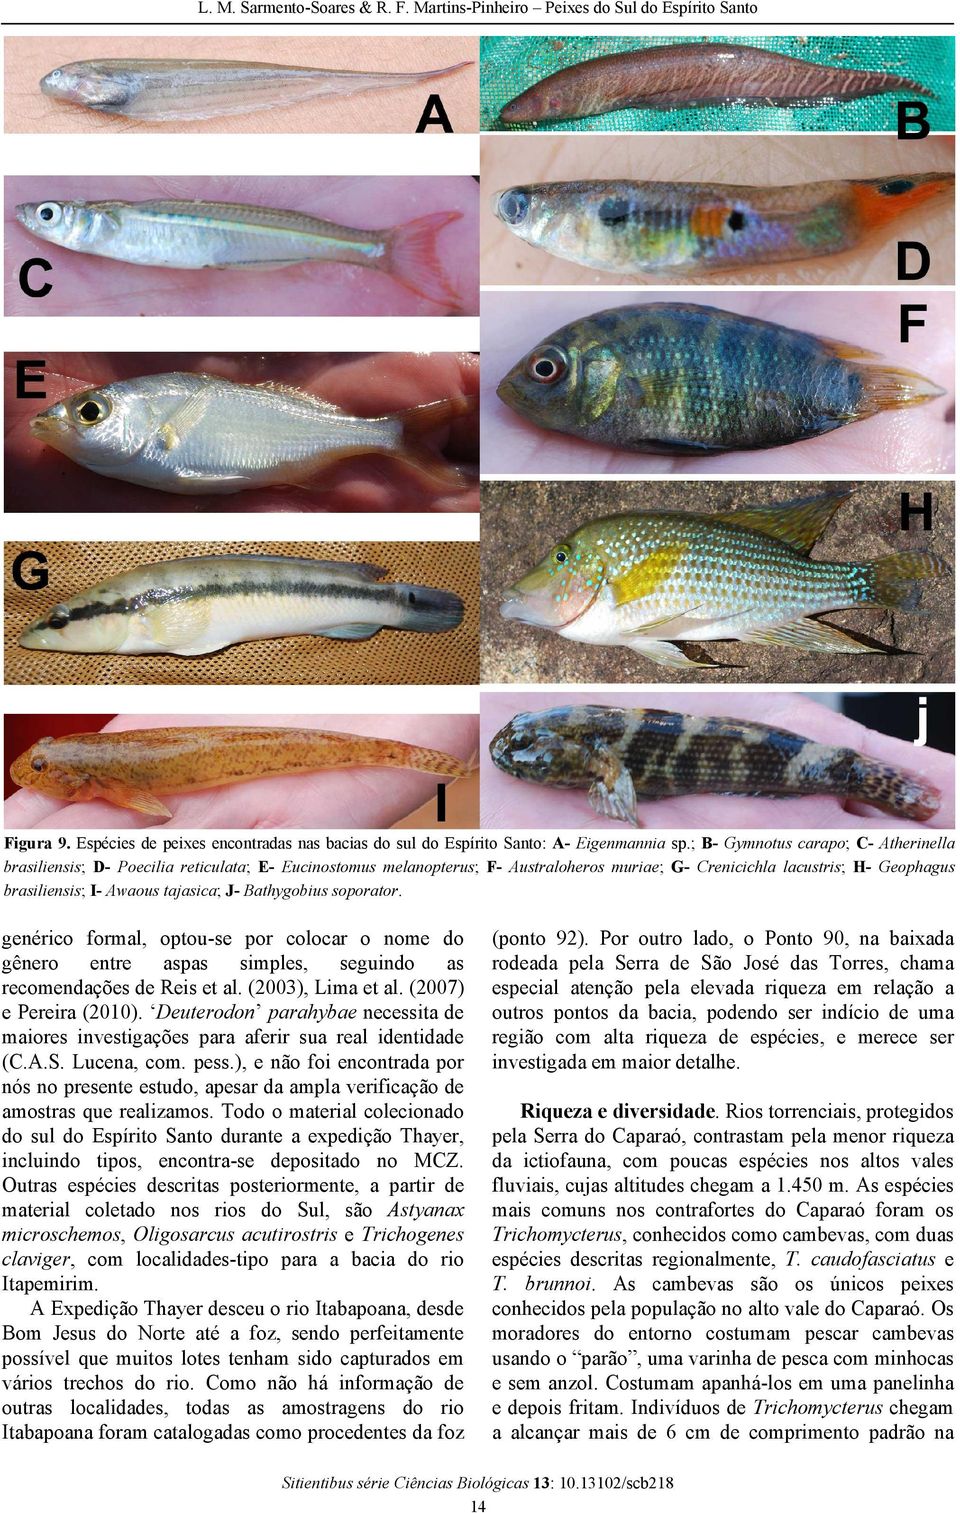 tajasica; J- Bathygobius soporator. genérico formal, optou-se por colocar o nome do gênero entre aspas simples, seguindo as recomendações de Reis et al. (2003), Lima et al. (2007) e Pereira (2010).